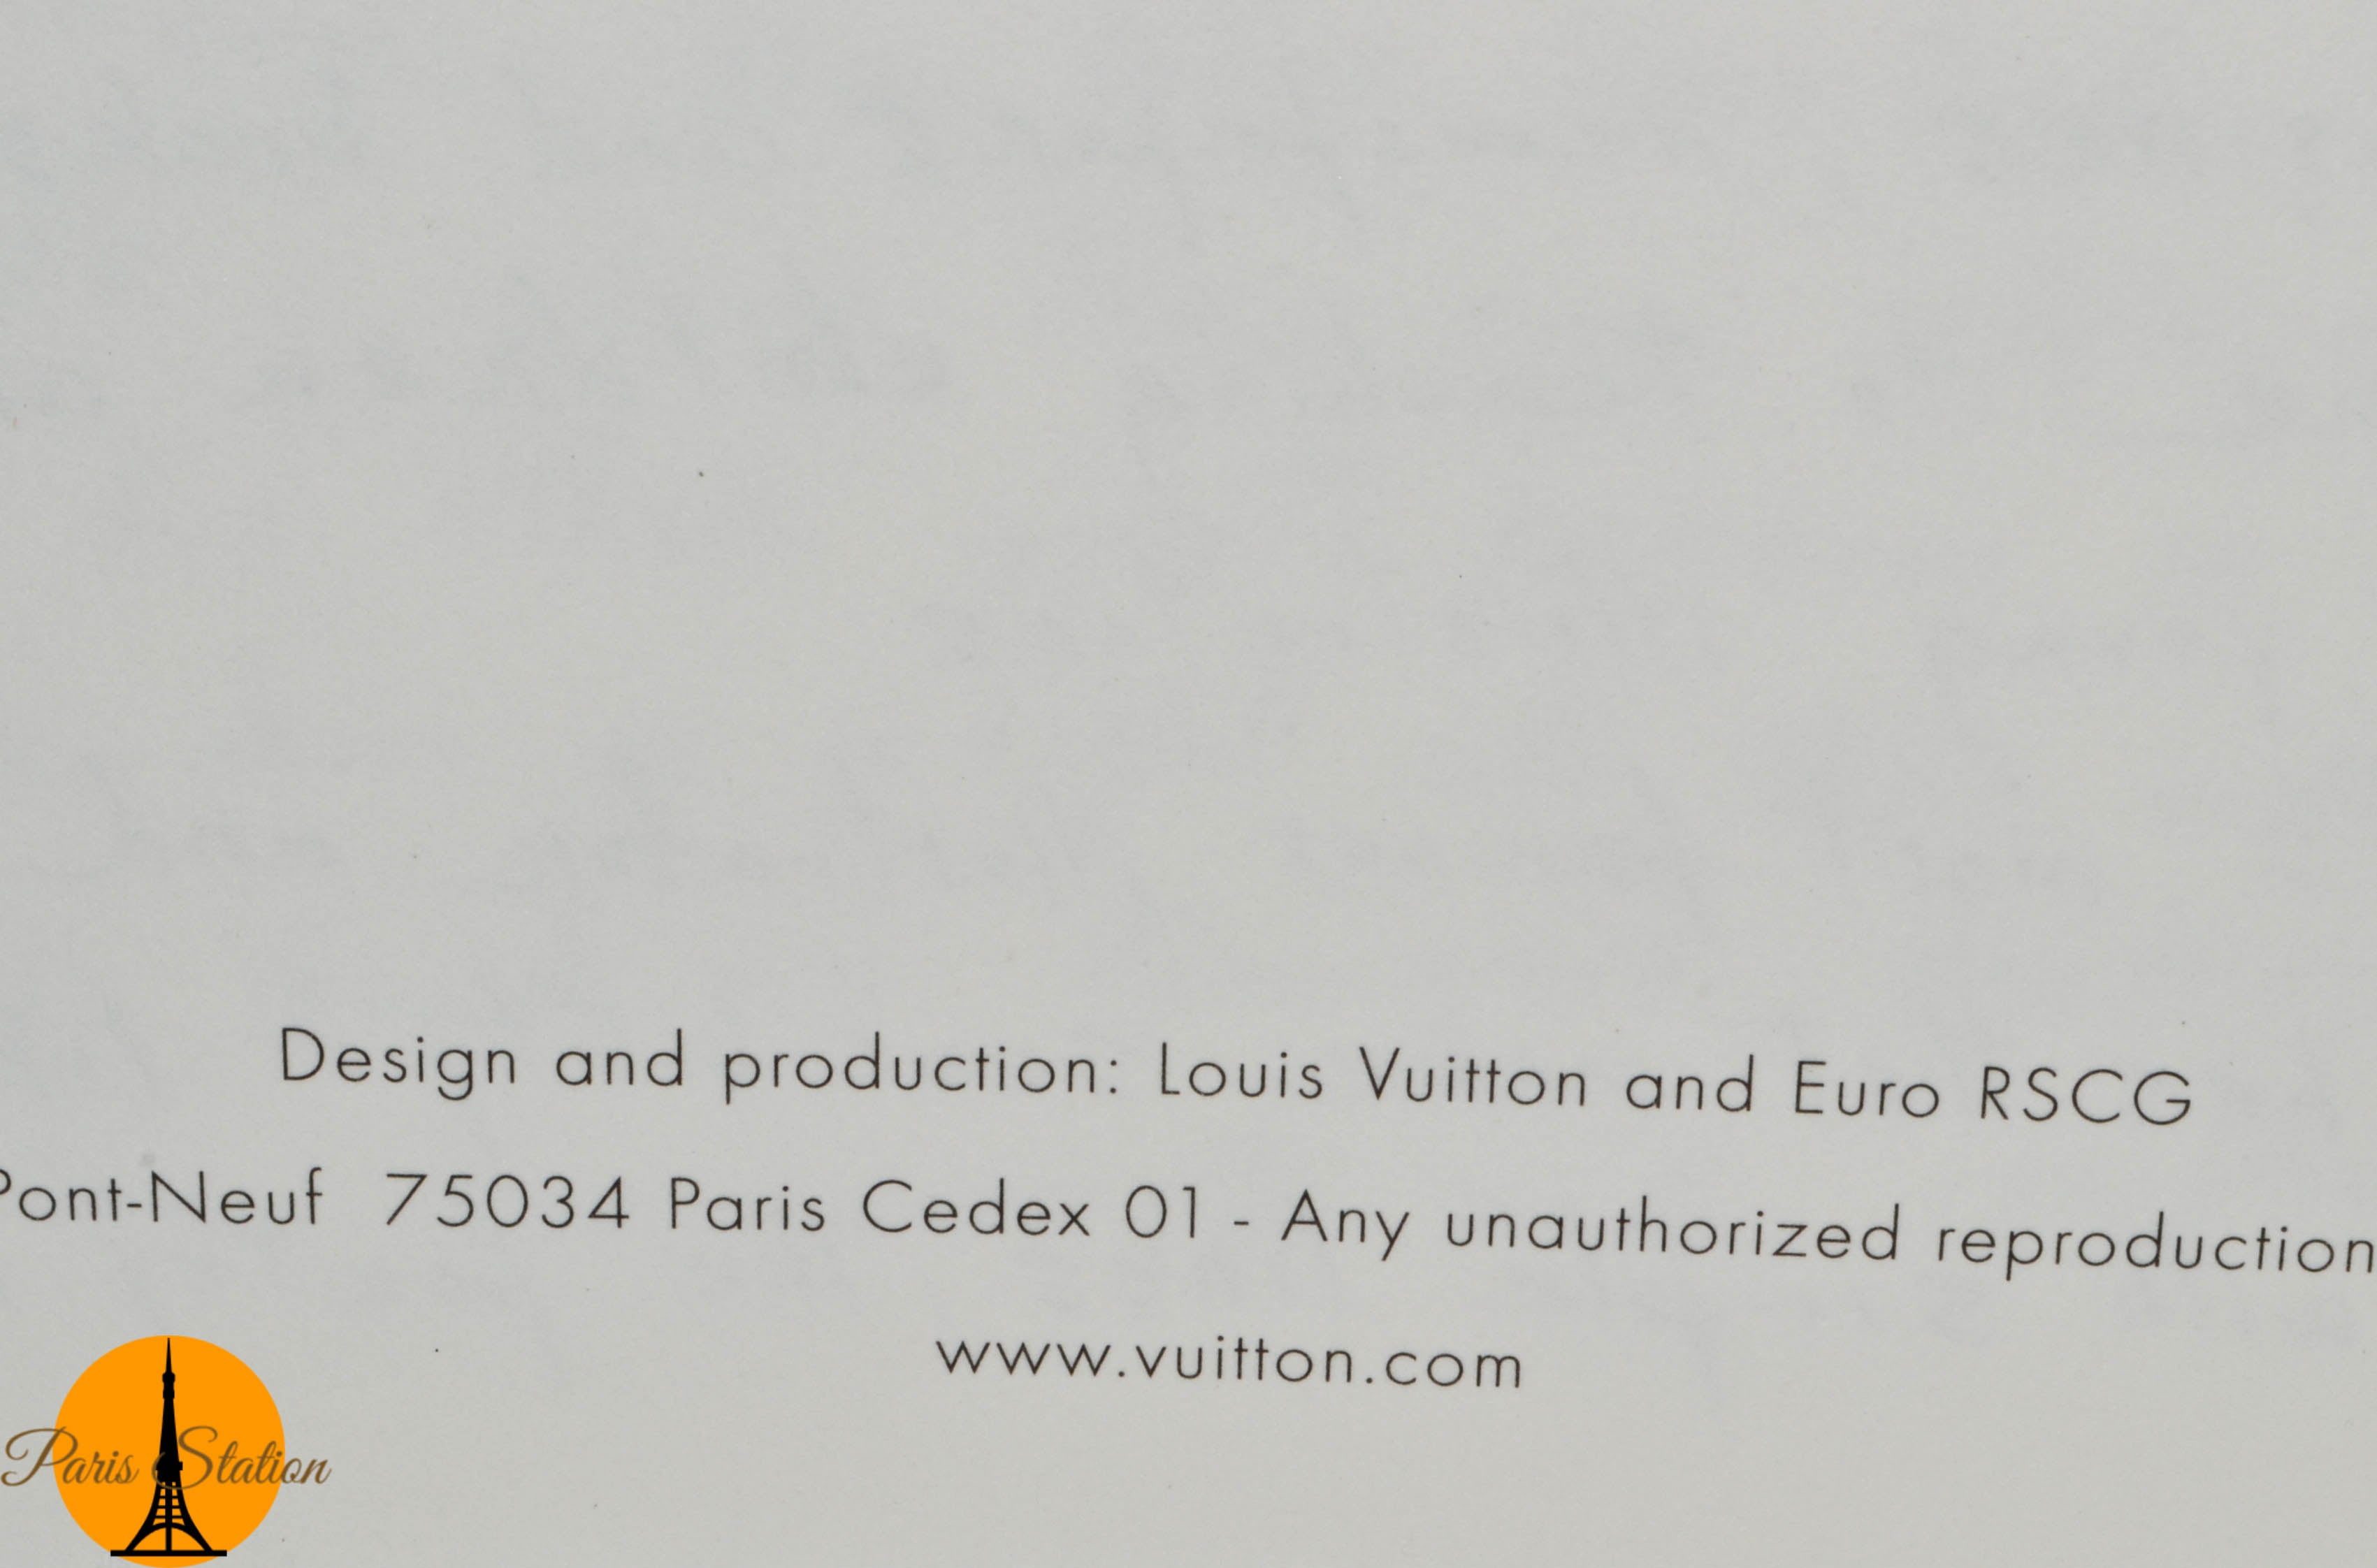 Authentic Louis Vuitton Green Rio de Janeiro Travel Book – Paris